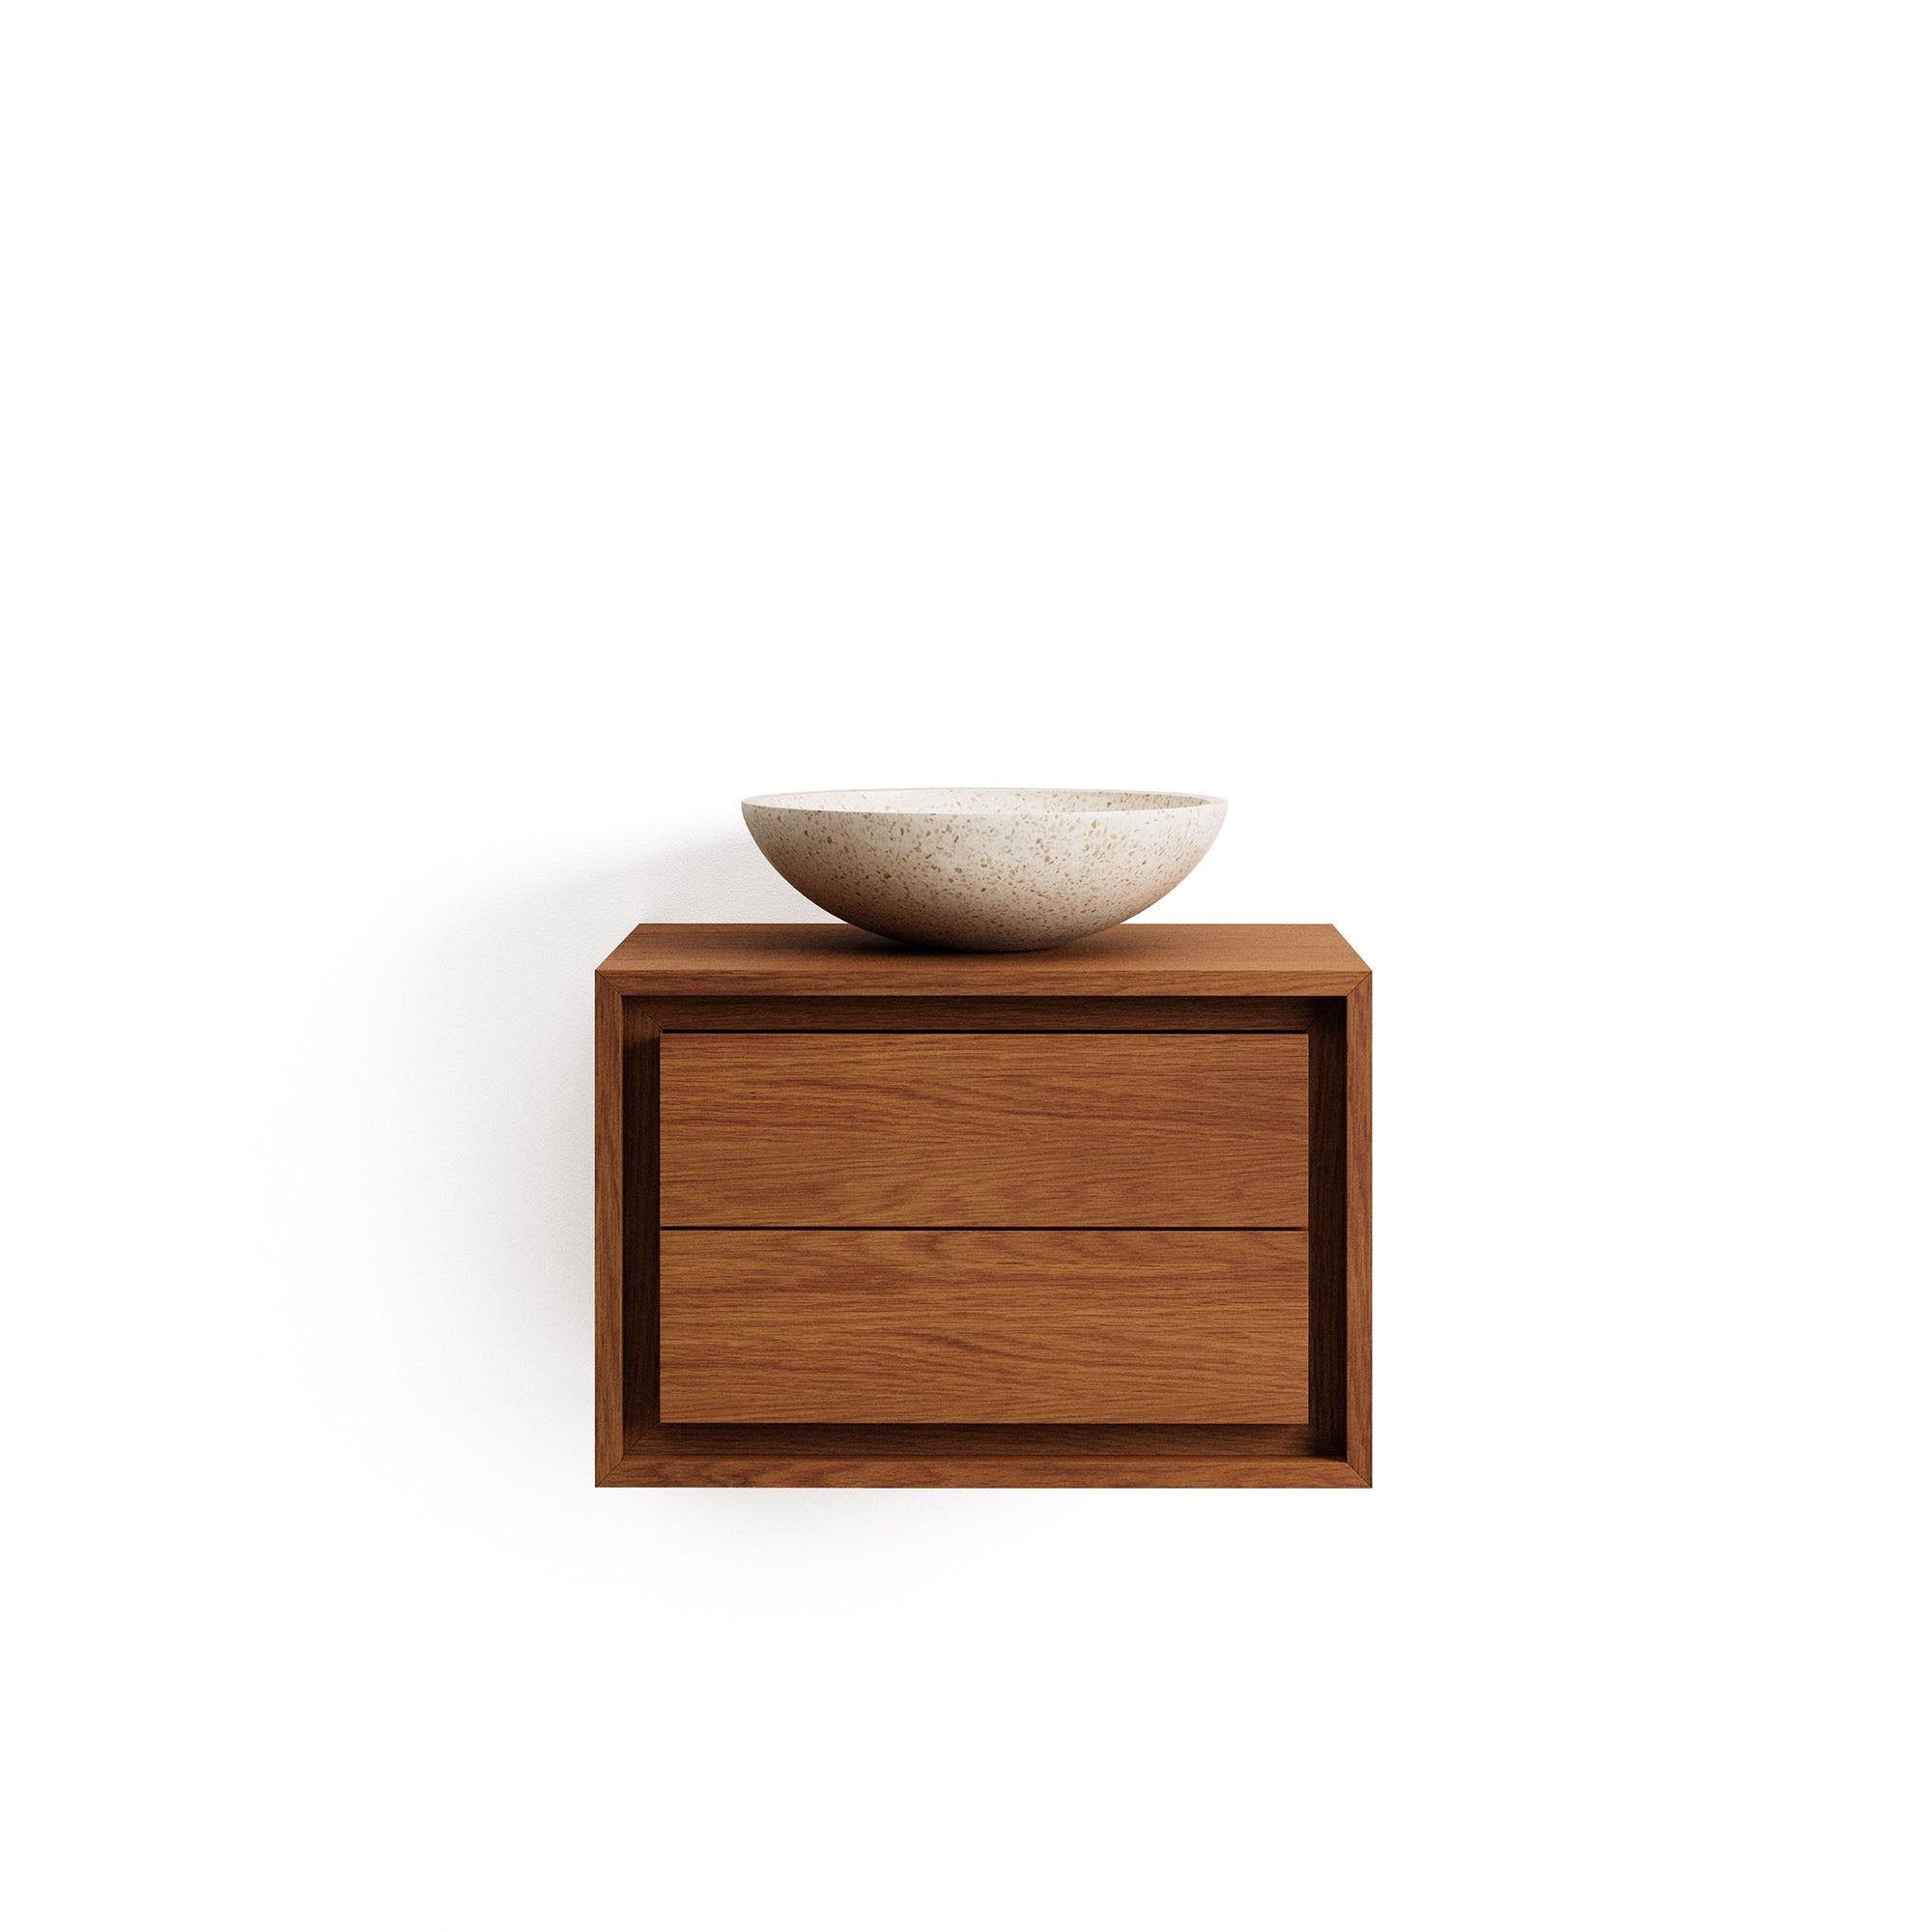 Kenta fürdőszobabútor tömör teakfából, diófa kivitelben, 60 x 45 cm